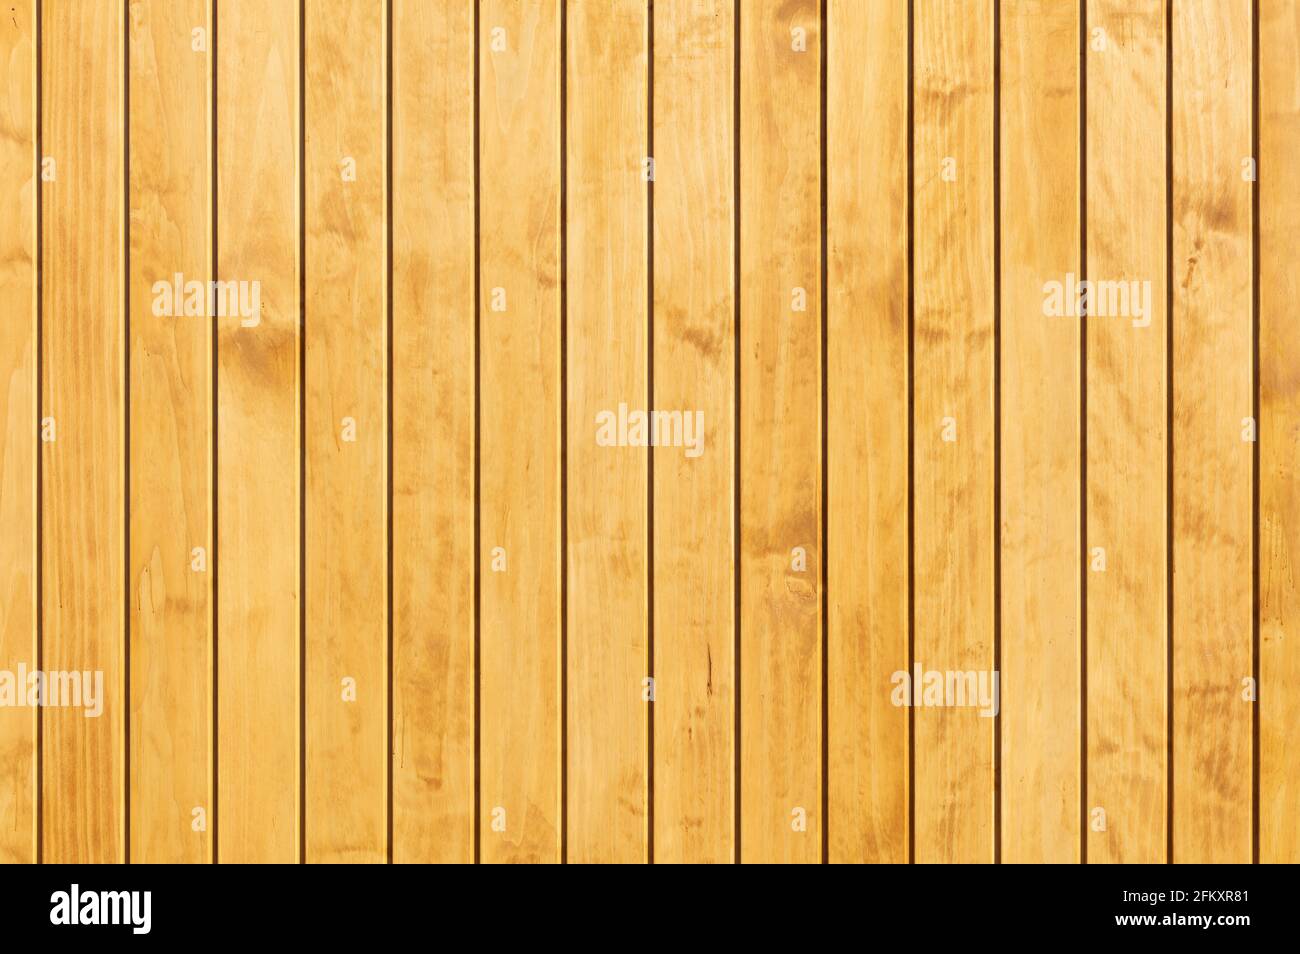 texture du bois comme fond de bois, revêtement de bois motif régulier de planches de bois panneaux de bois Banque D'Images